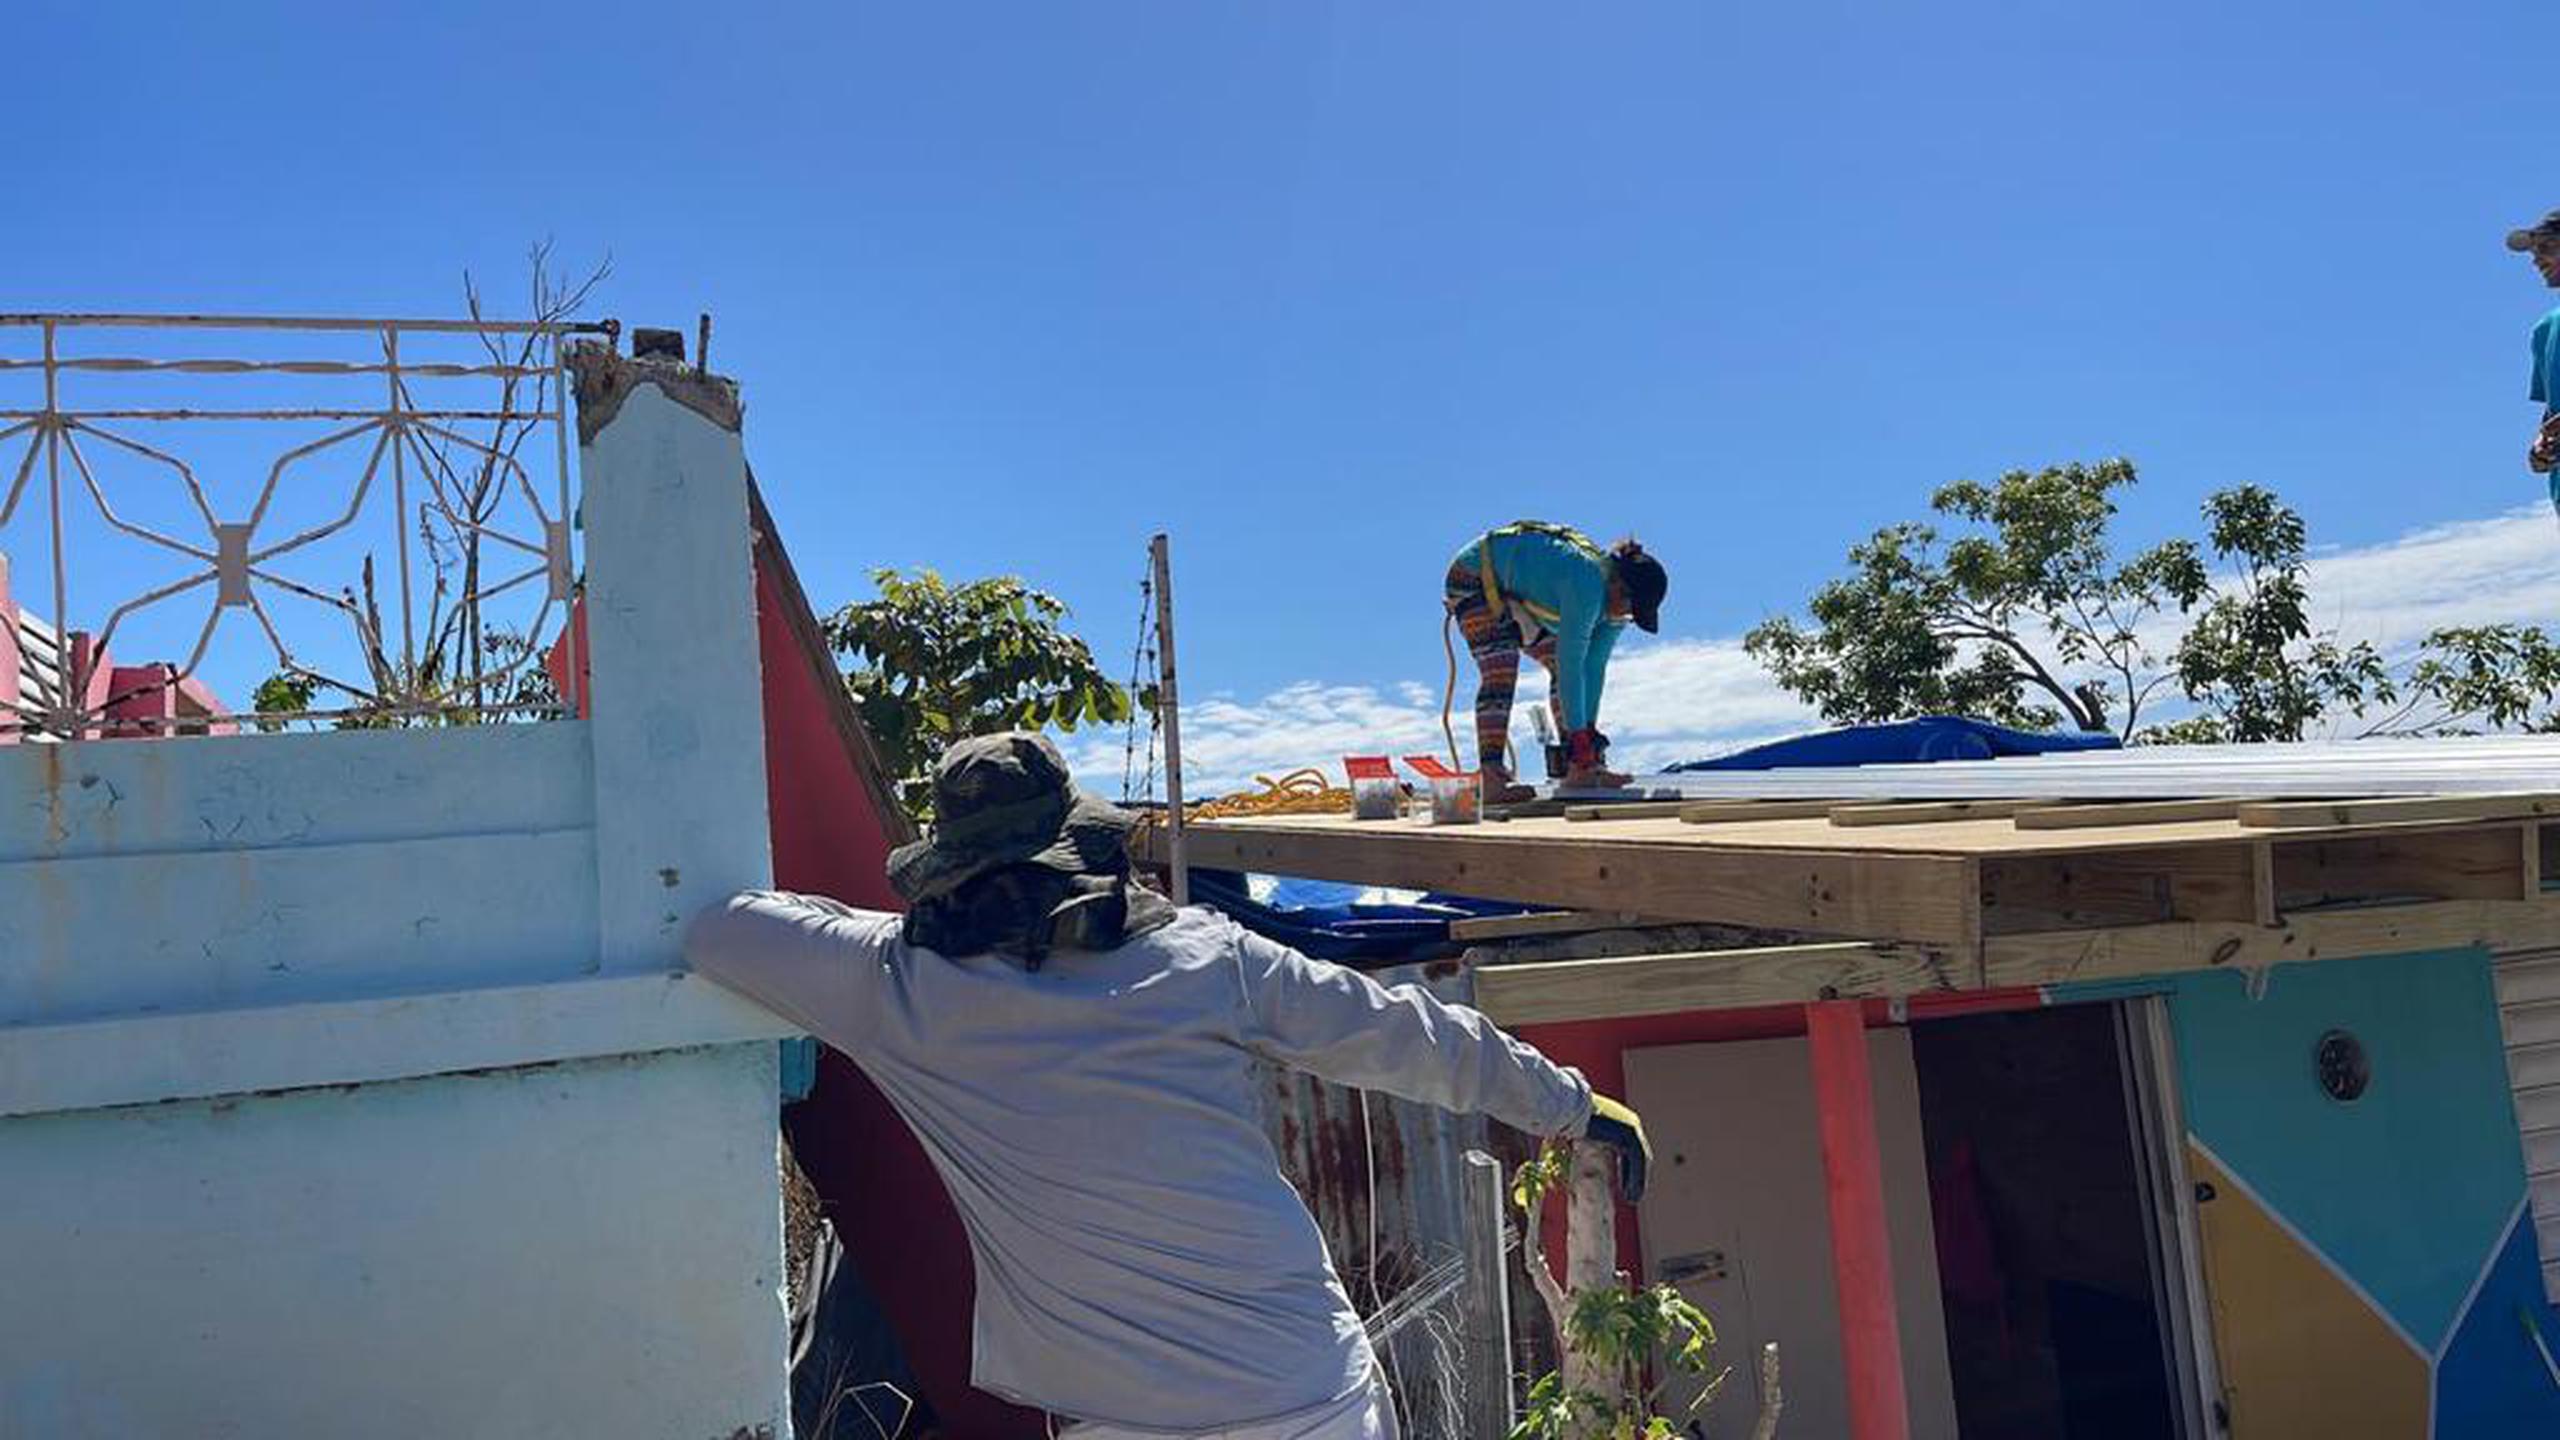 El programa Adopta un techo, de la organización sin fines de lucro Arte para unir, ha reparado 24 techos en siete meses.